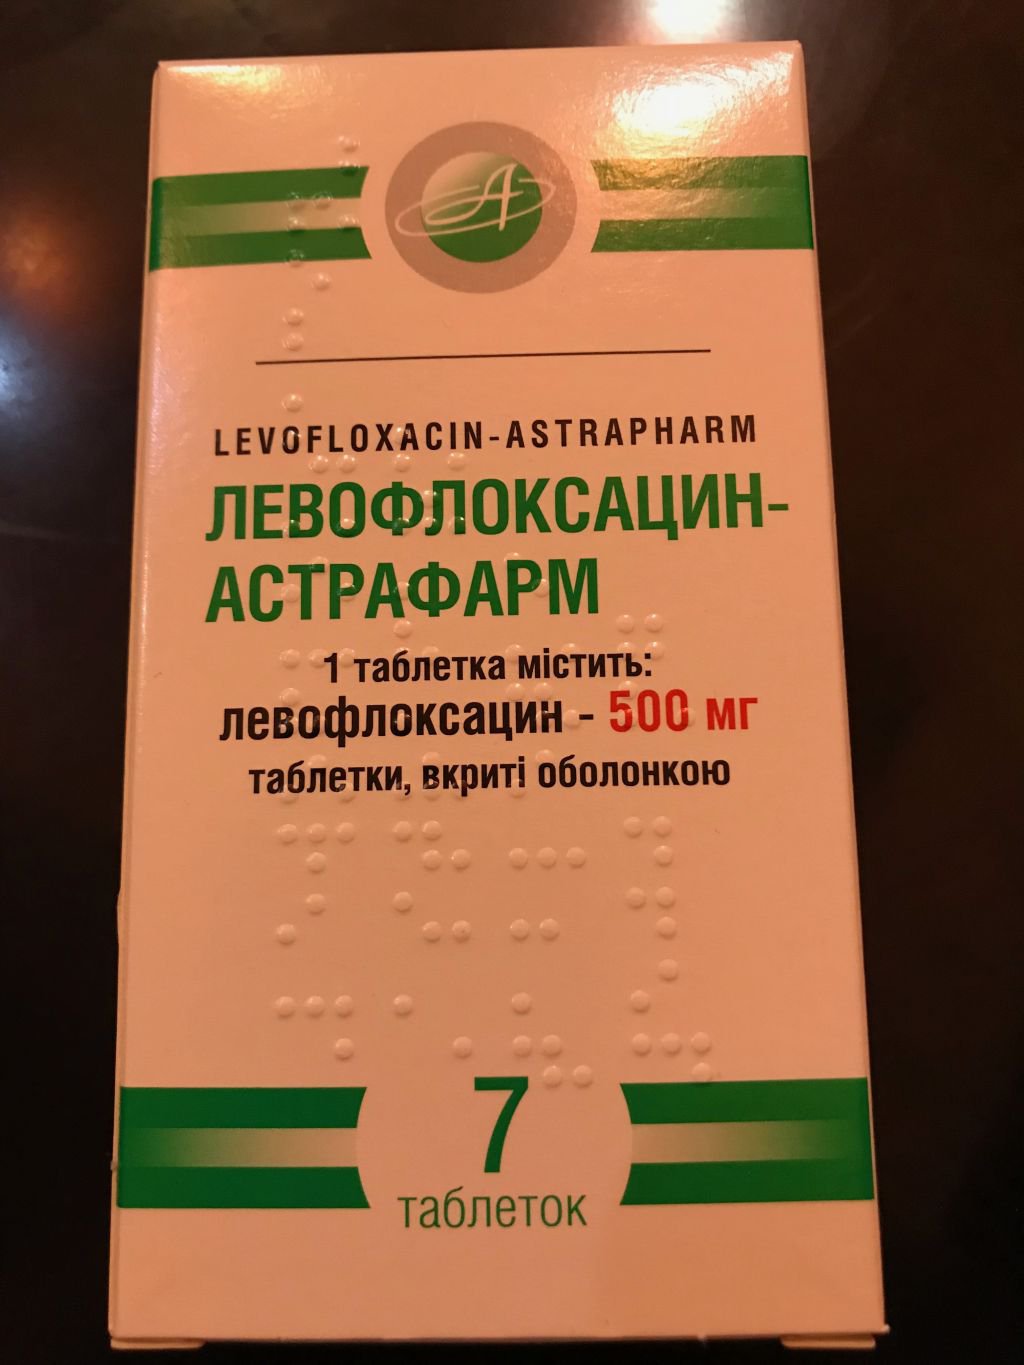 590 ГАТИЦИН-Н - Gatifloxacin